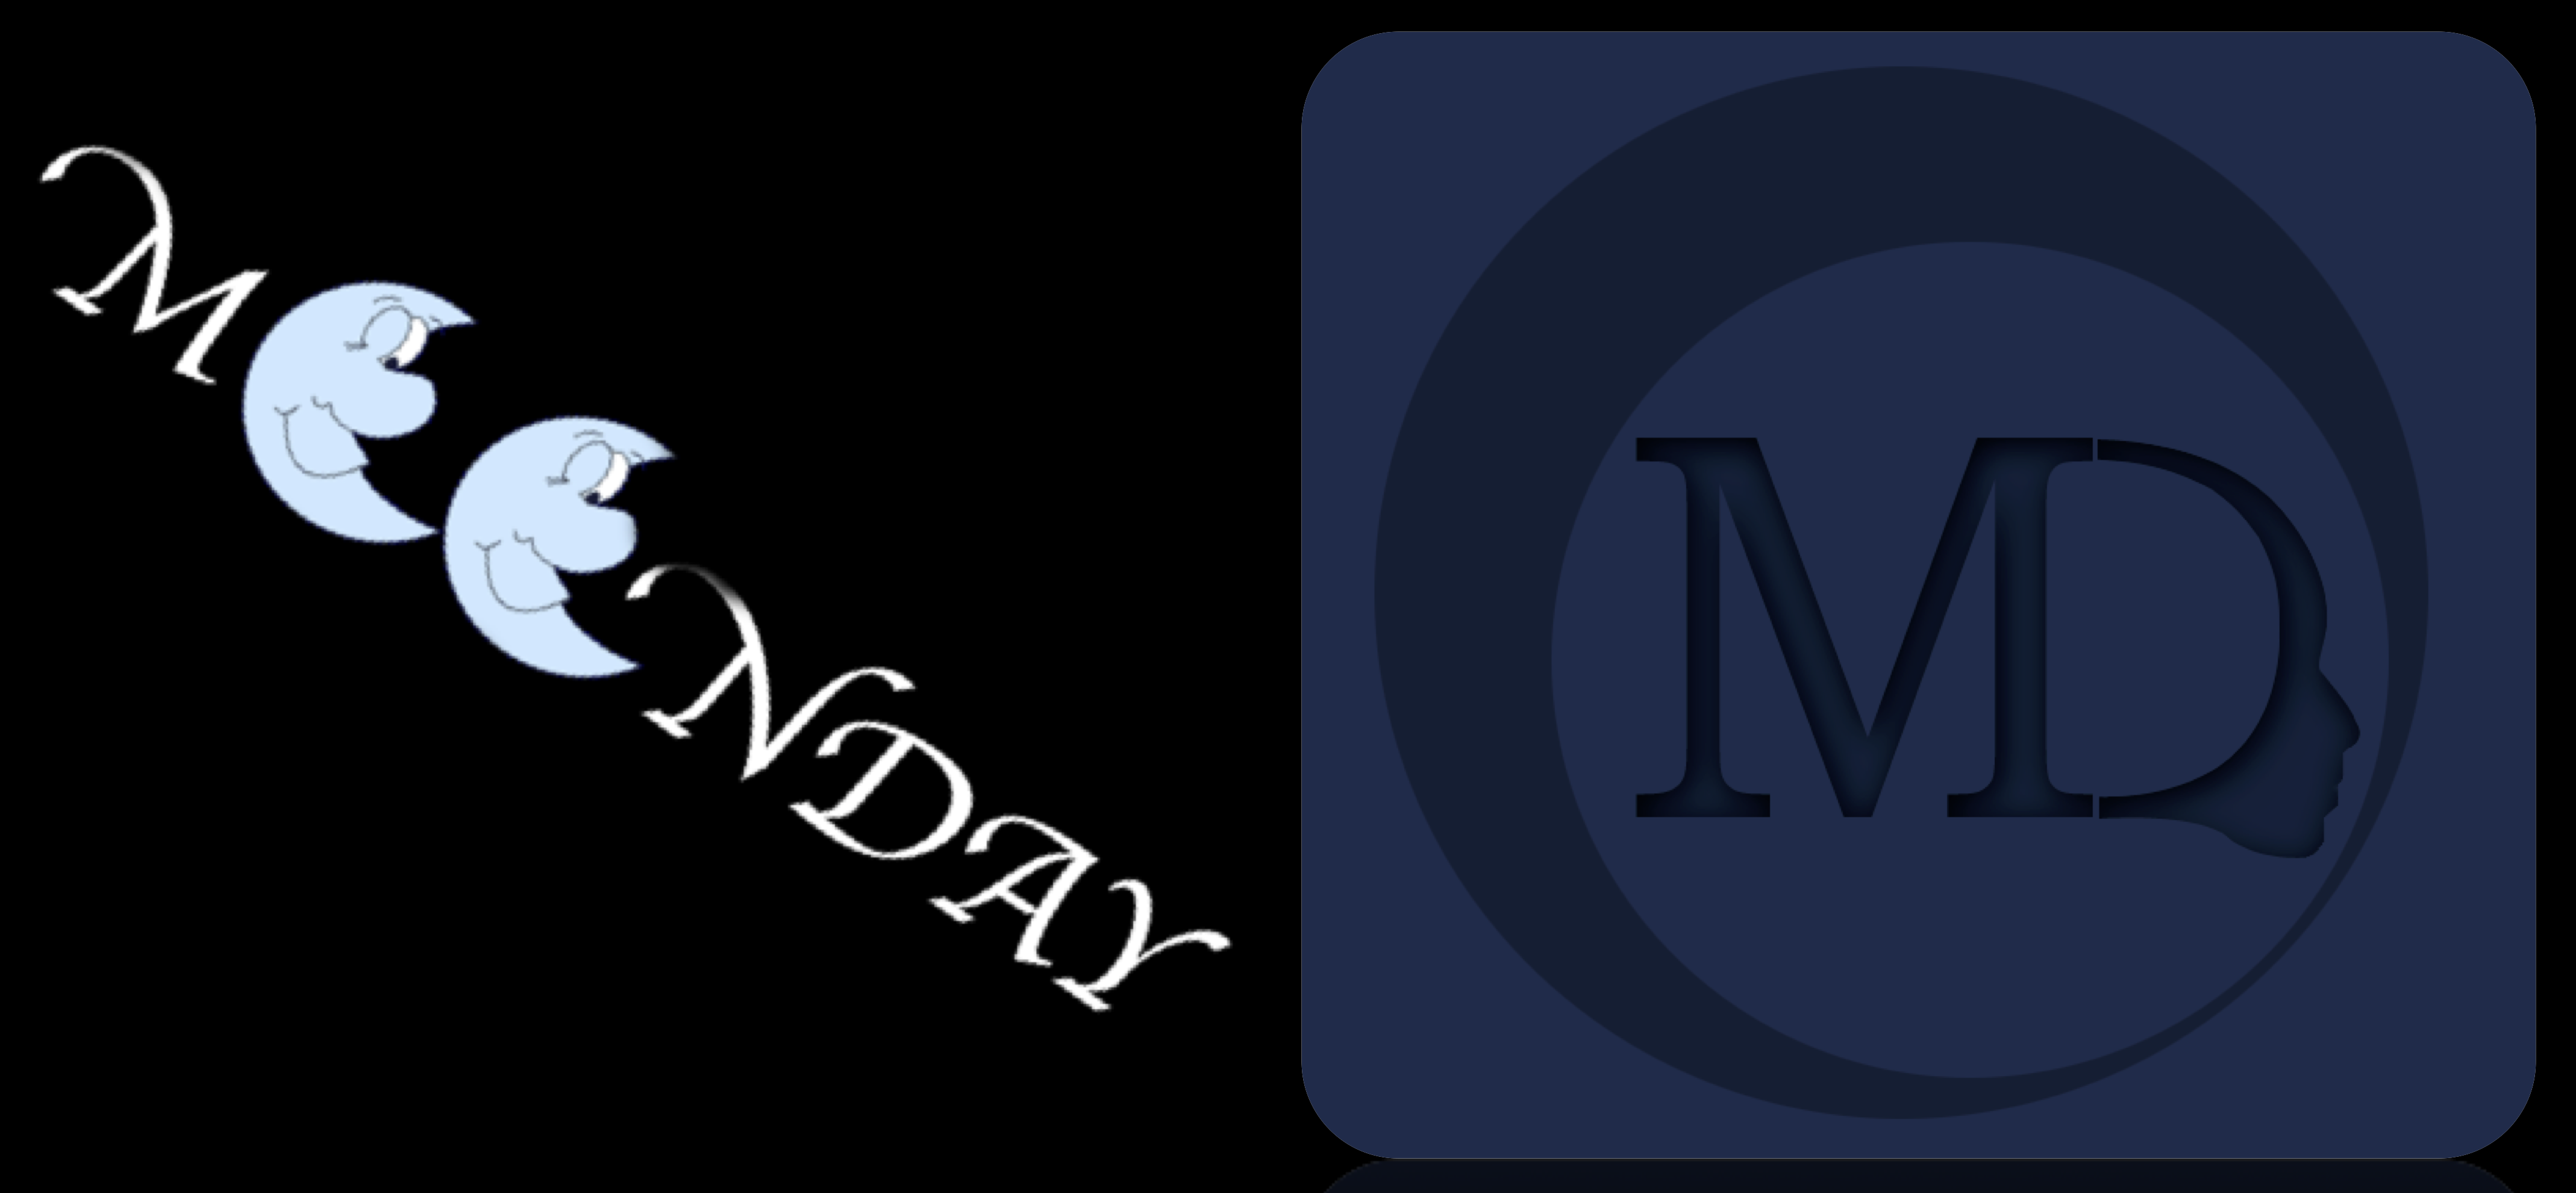 MoonDay! Unsere Interdisziplinäre Seminarreihe